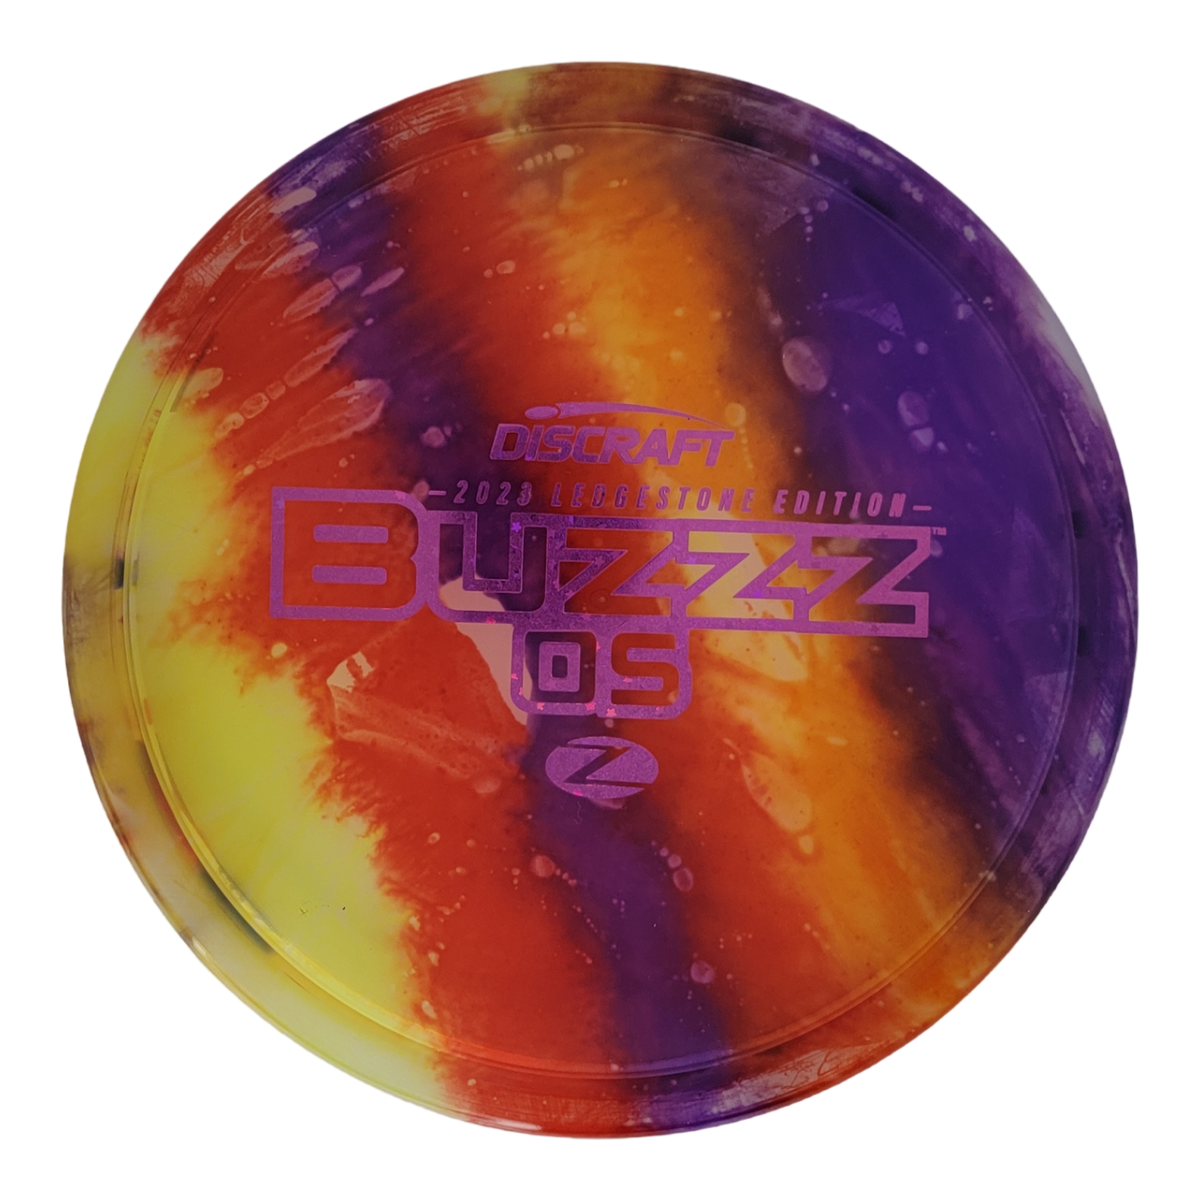 Discraft Fly Dye Z Buzz OS - Ledgestone 2 (2023)